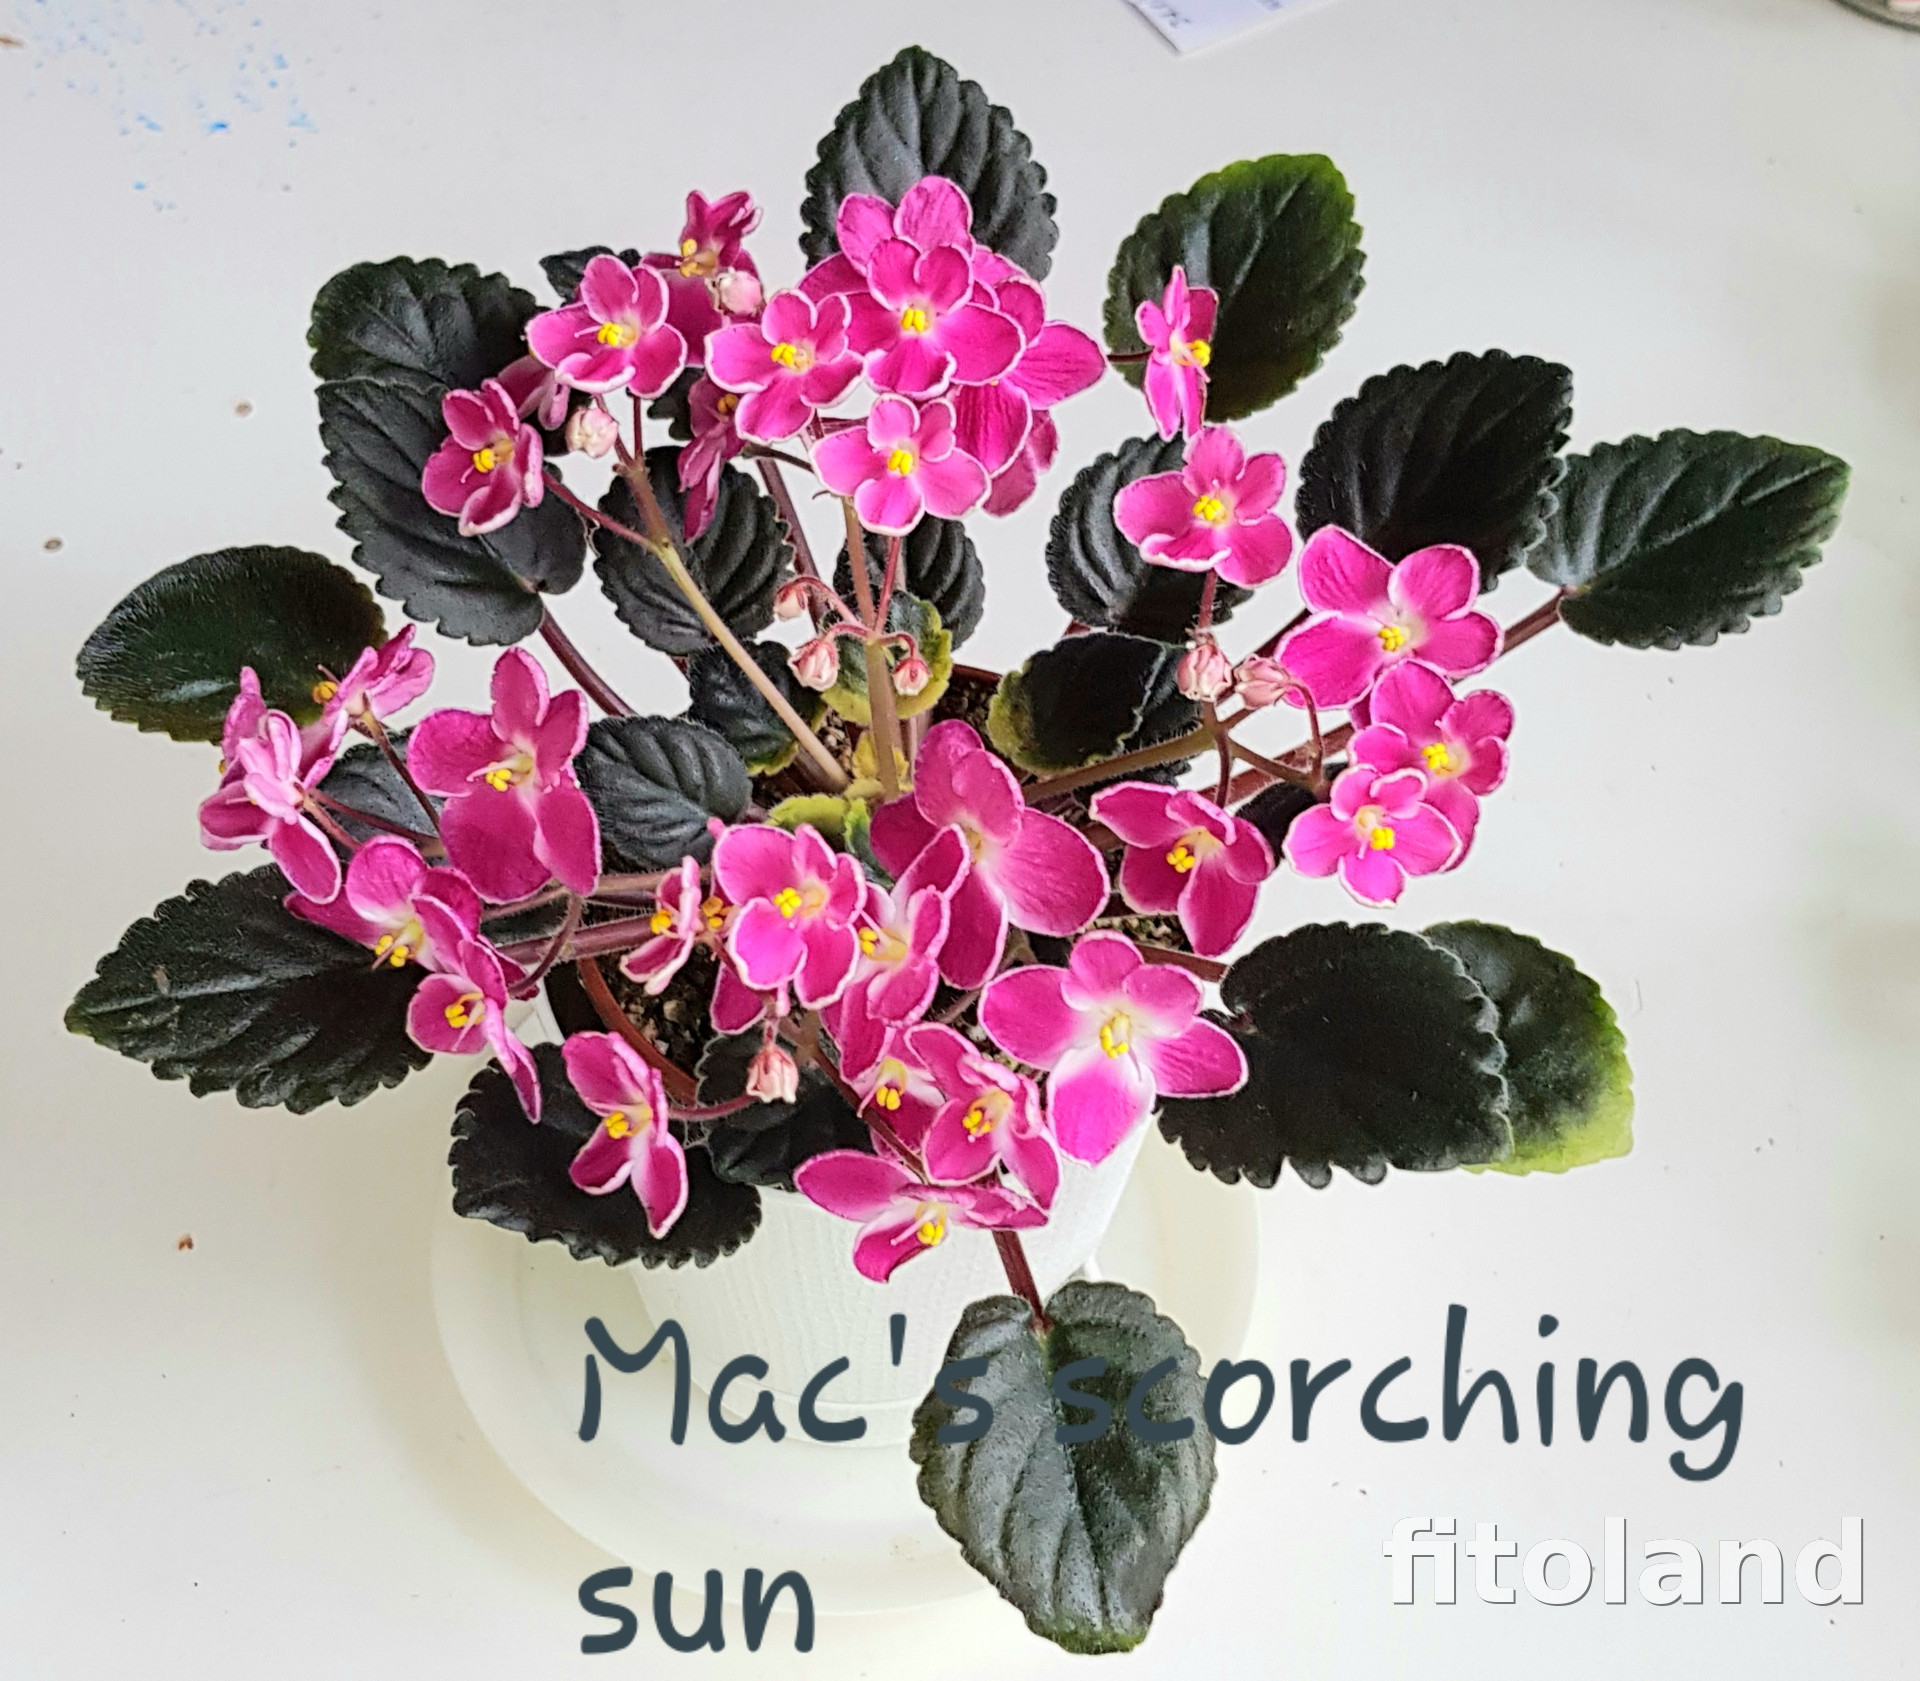 Сорта фиалок: Mac's Scorching Sun и Reigning Beauty - характеристики, названия и фото